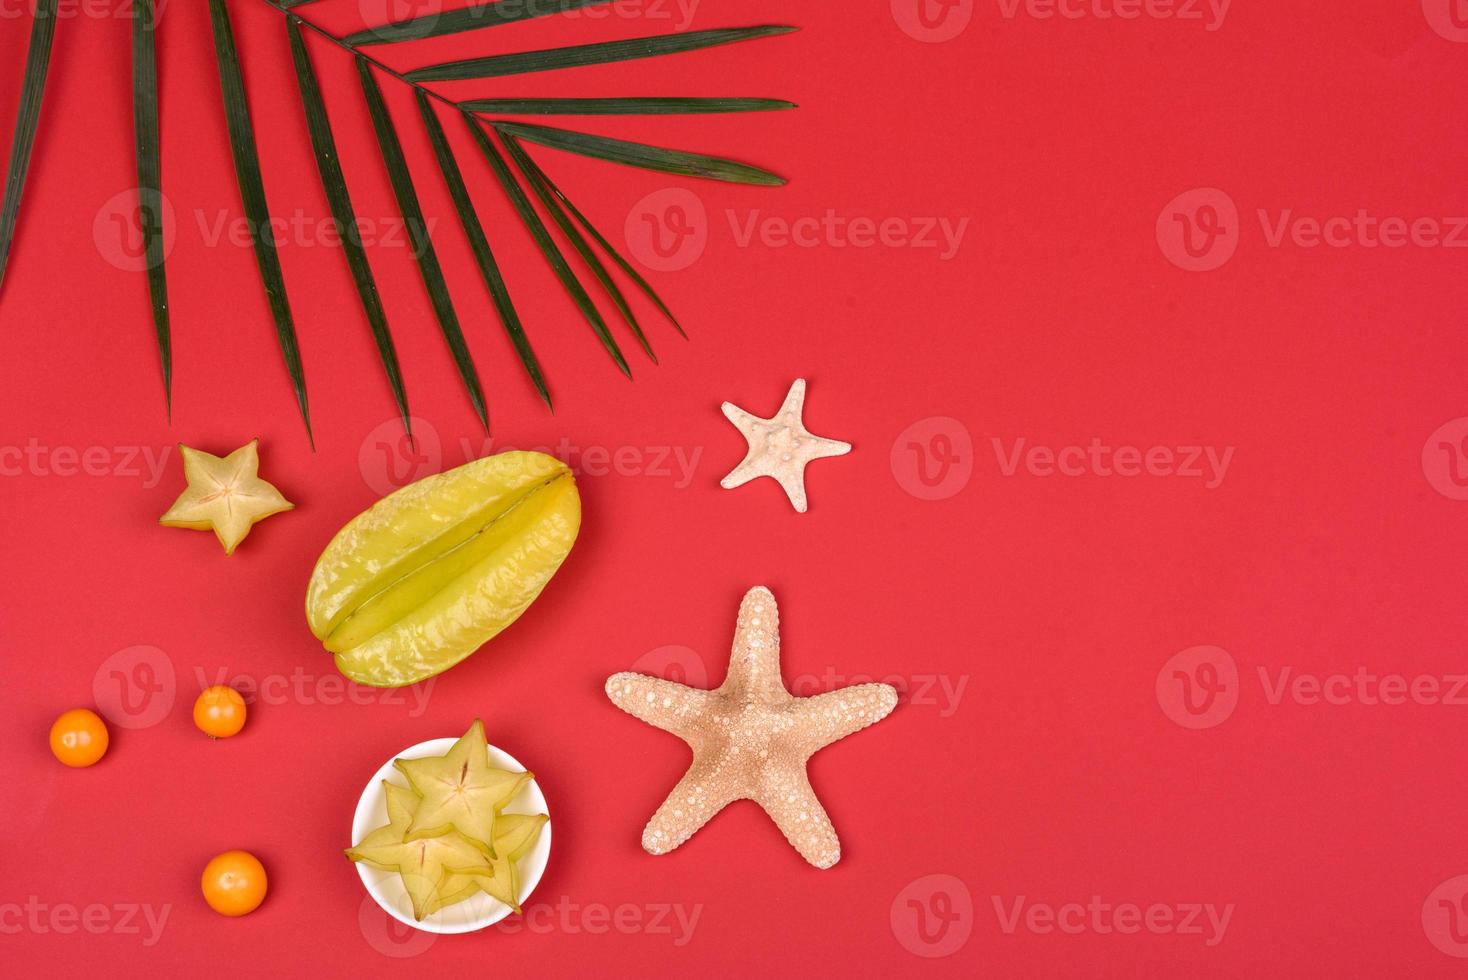 Carambole aux fruits, accessoires de plage et feuillage d'une plante tropicale sur papier de couleur photo